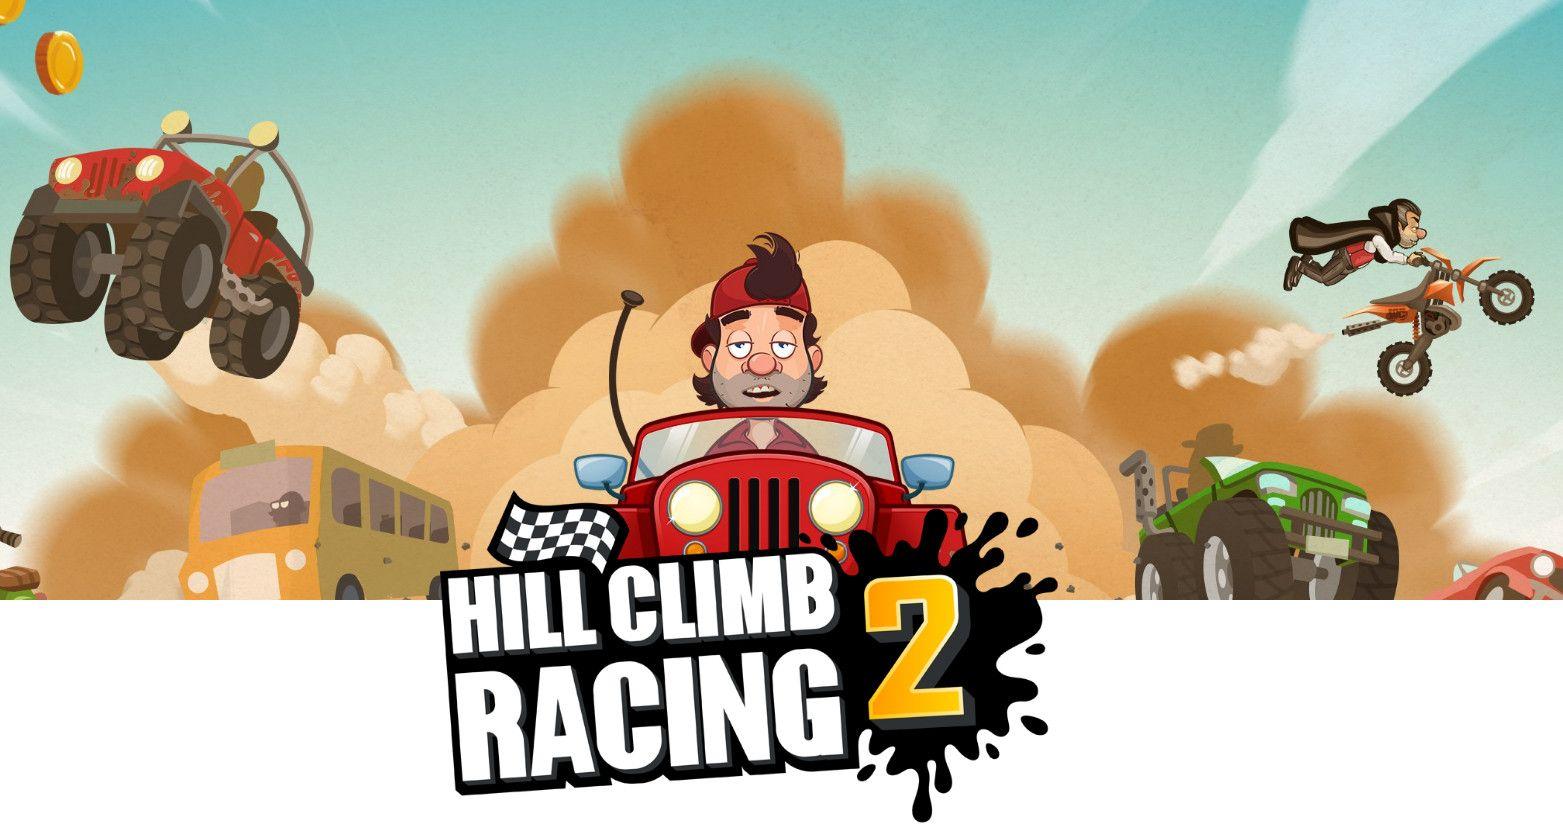 Hill Climb Racing 2 Wallpapers - Wallpaper Cave